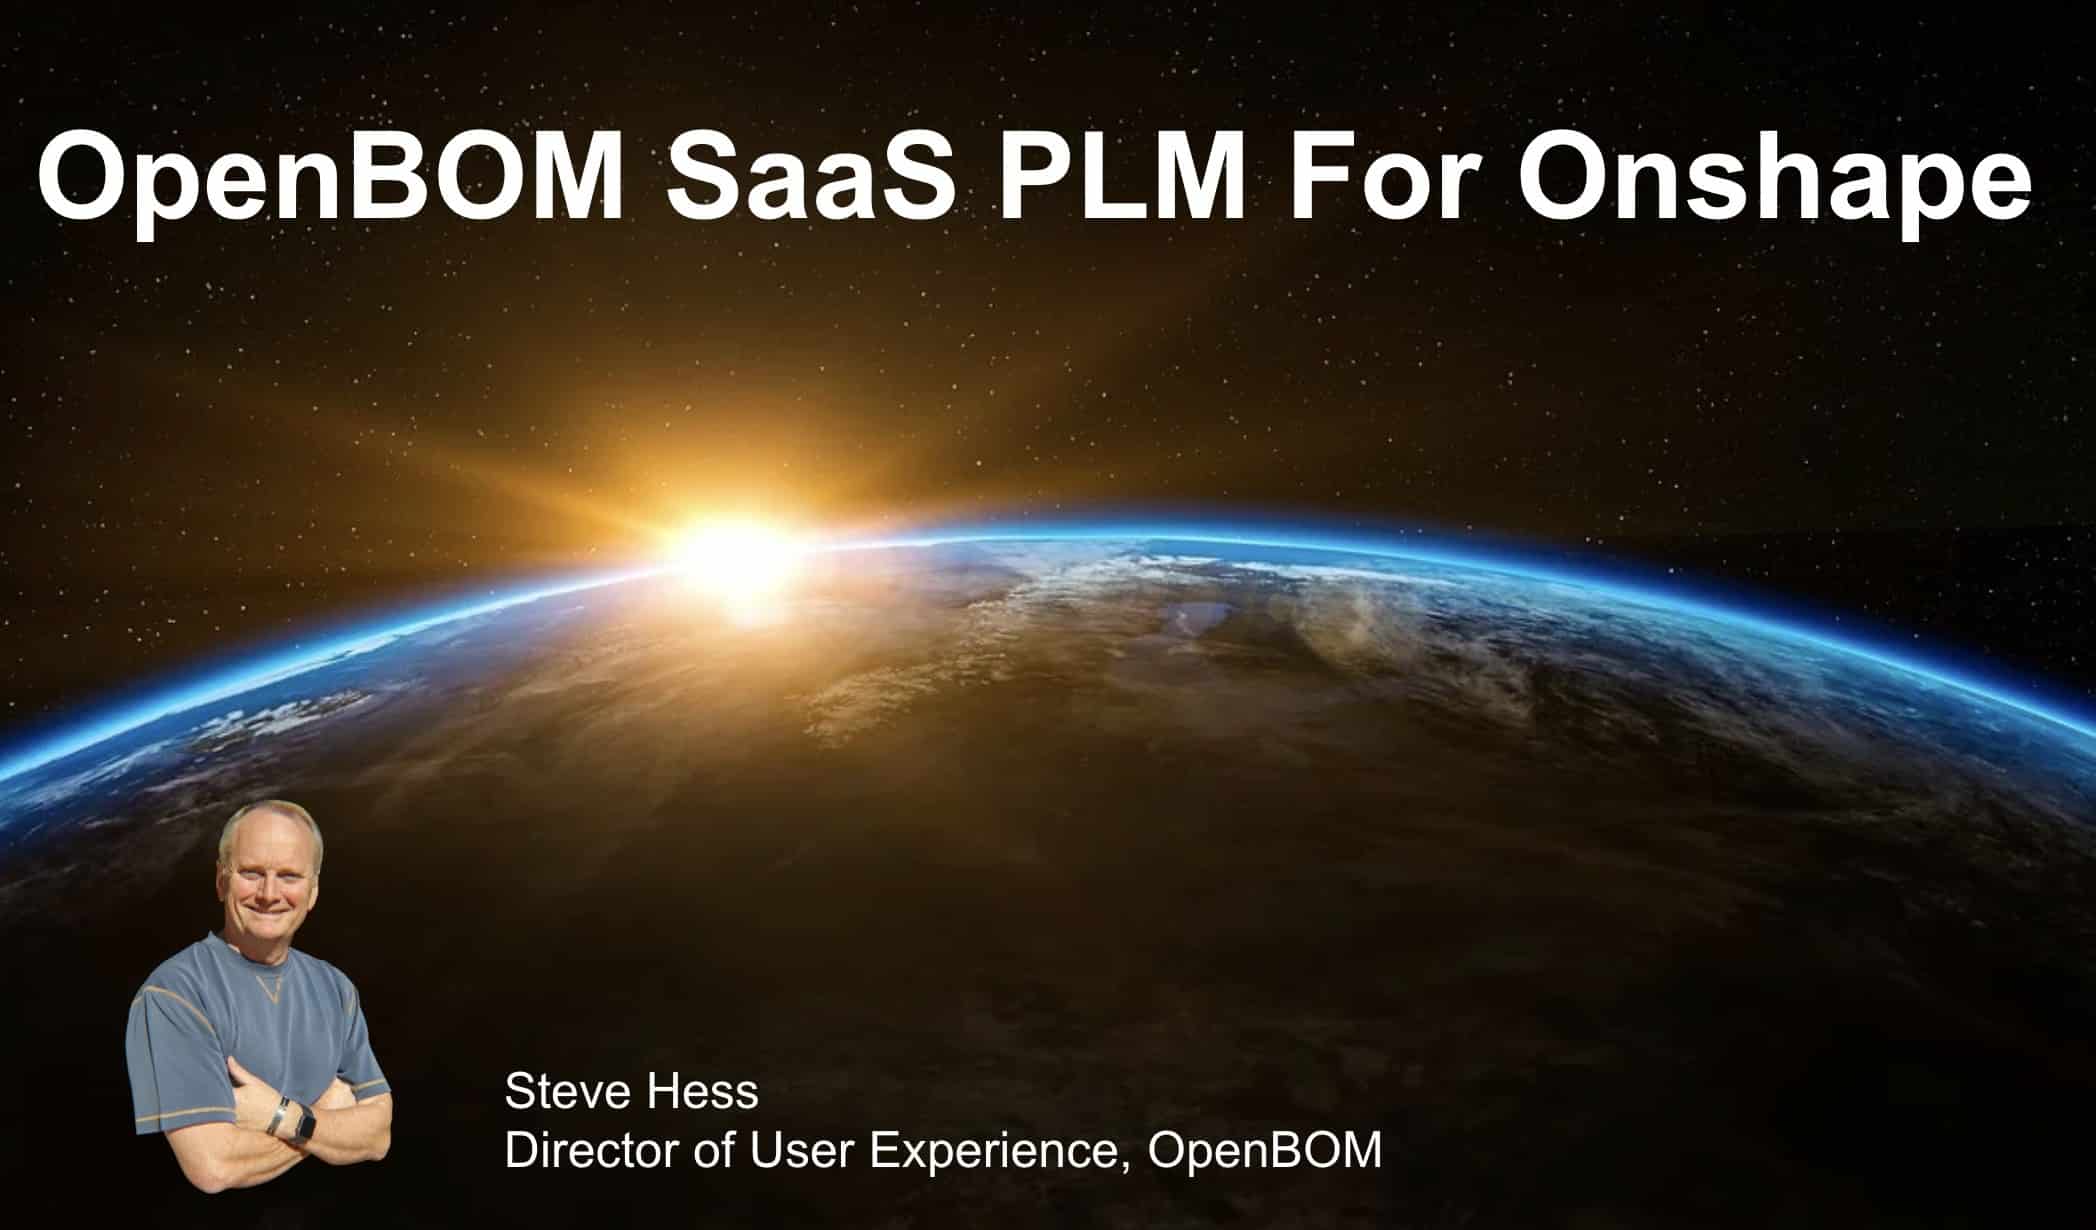 OpenBOM SaaS PLM for Onshape